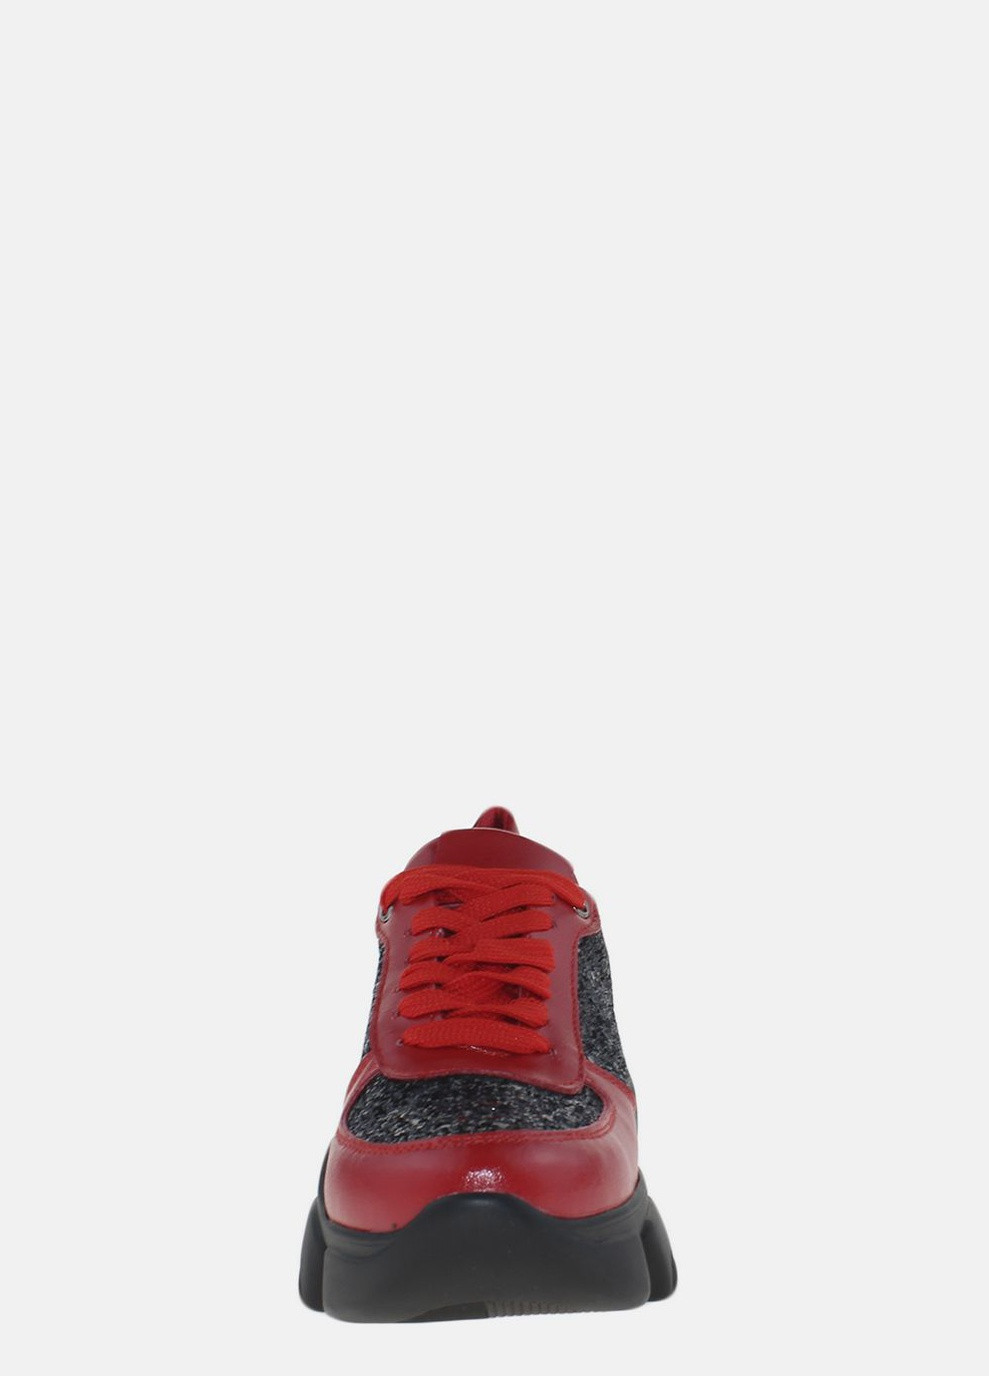 Червоні осінні кросівки r20-4568 червоний-чорний Fabiani